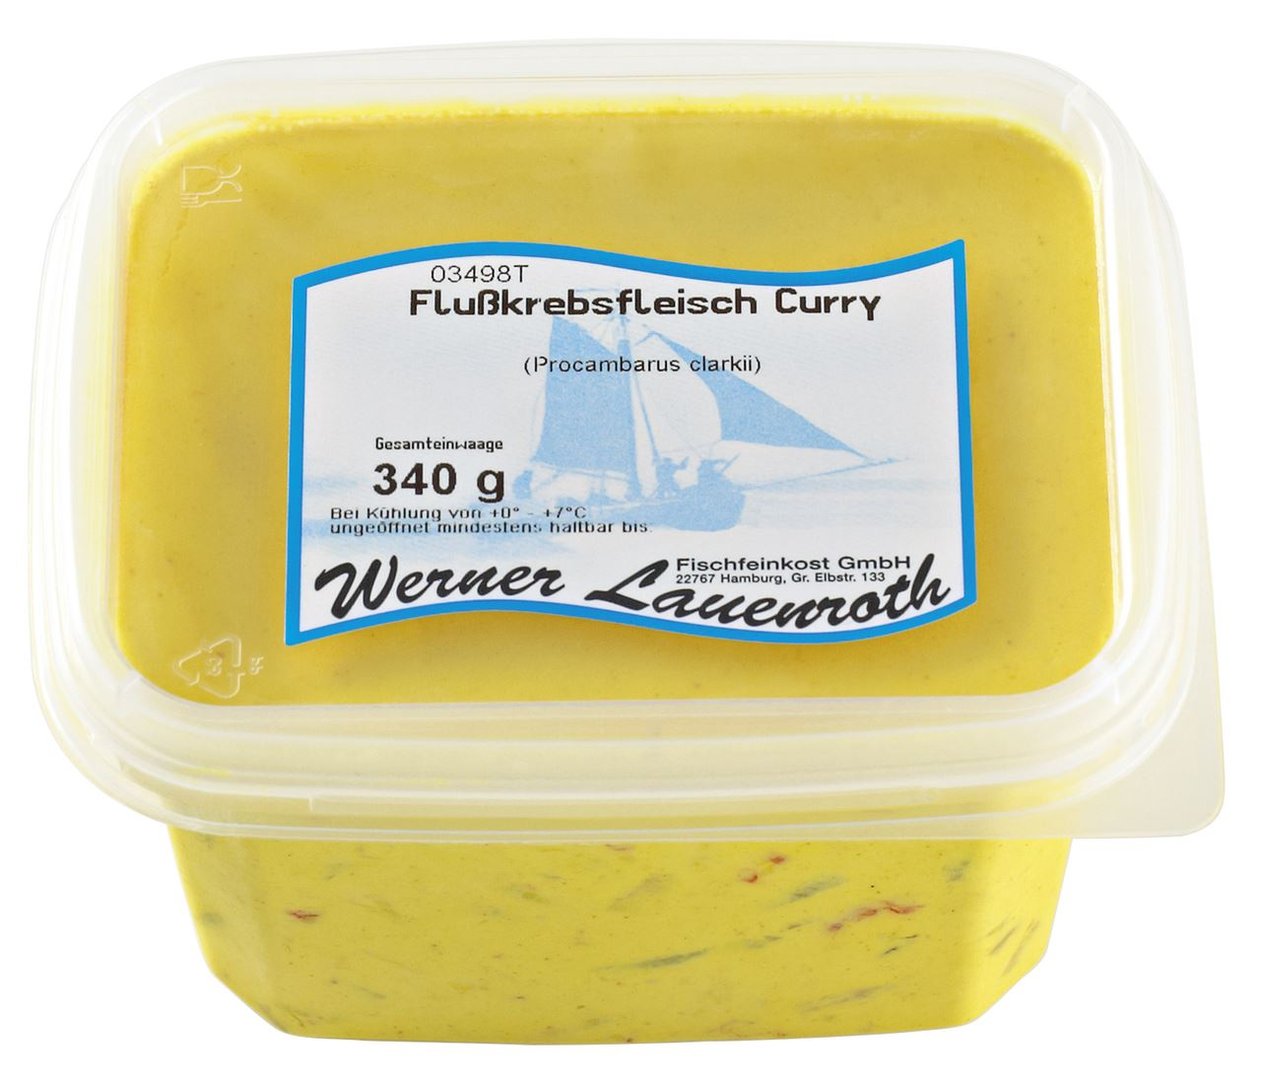 Werner Lauenroth - Flusskrebsfleisch Curry 340 g Becher